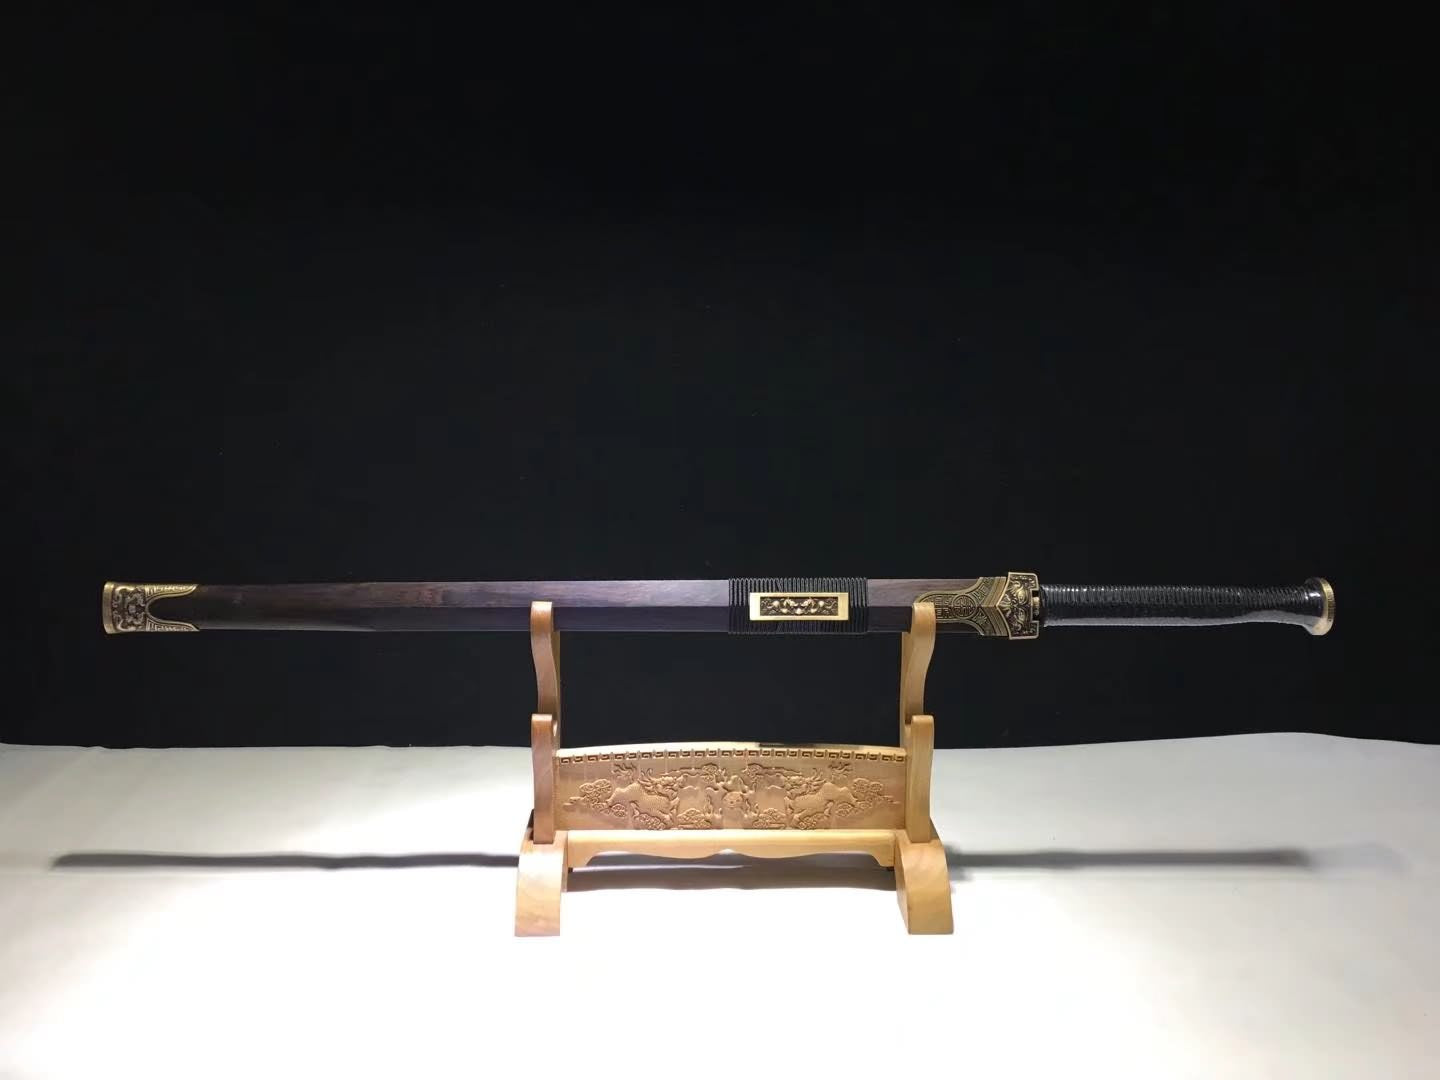 Han Sword Real,Damascus Steel Blades,Brass Fittings,Ebony Scabbard